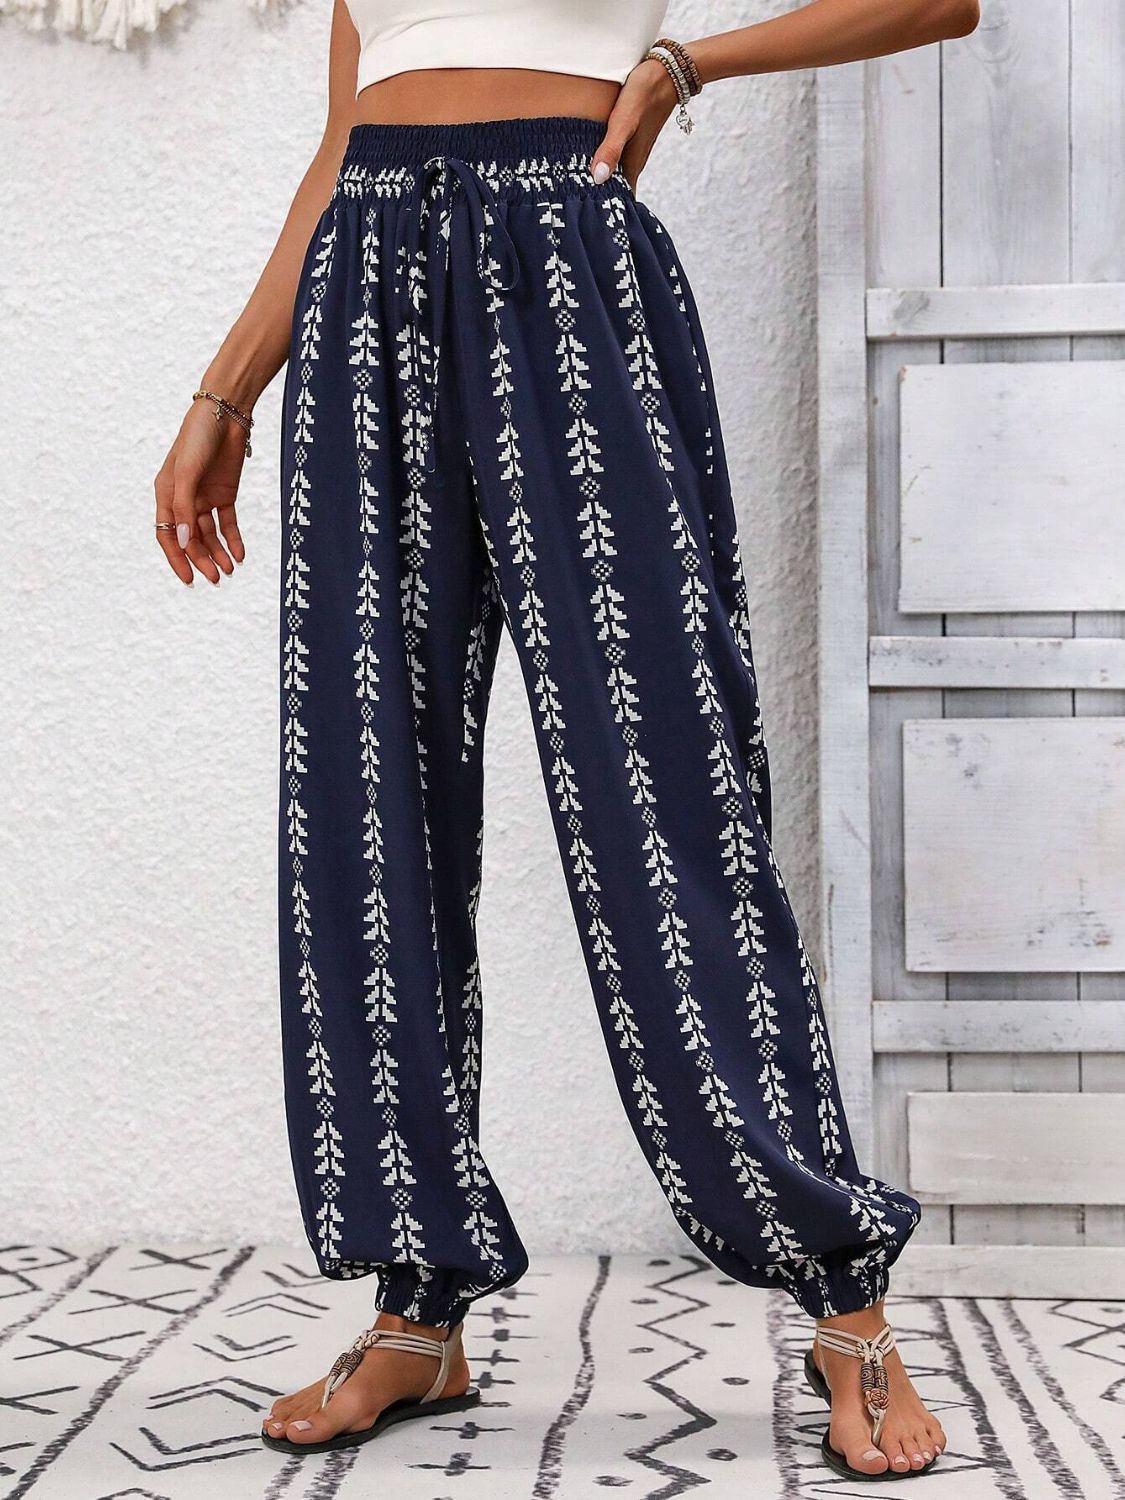 TEEK - Tied Printed High Waist Pants PANTS TEEK Trend   